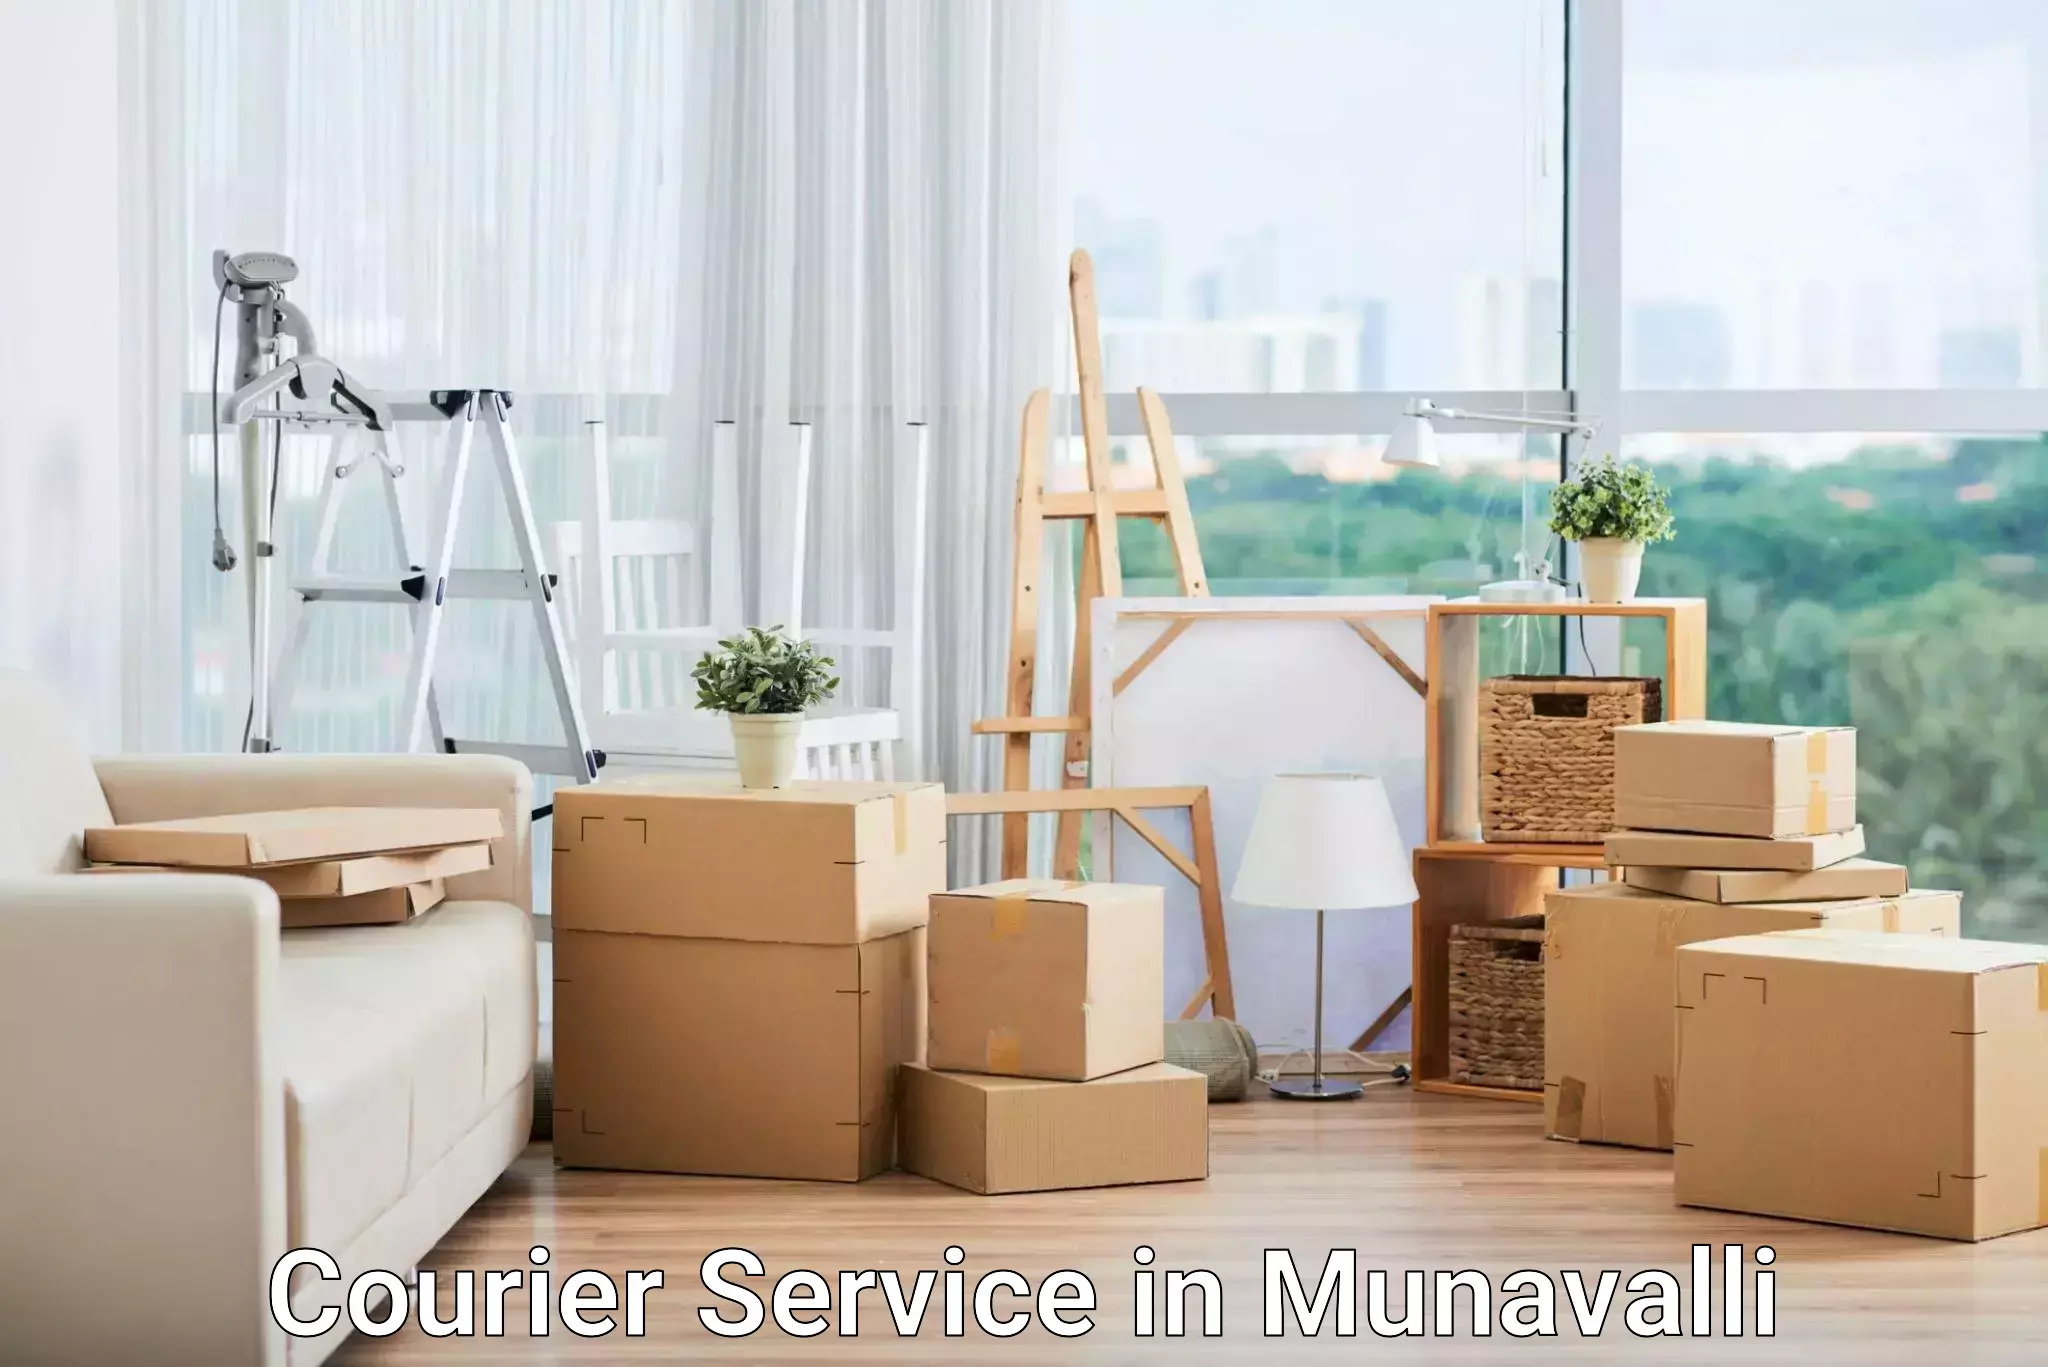 Nationwide courier service in Munavalli